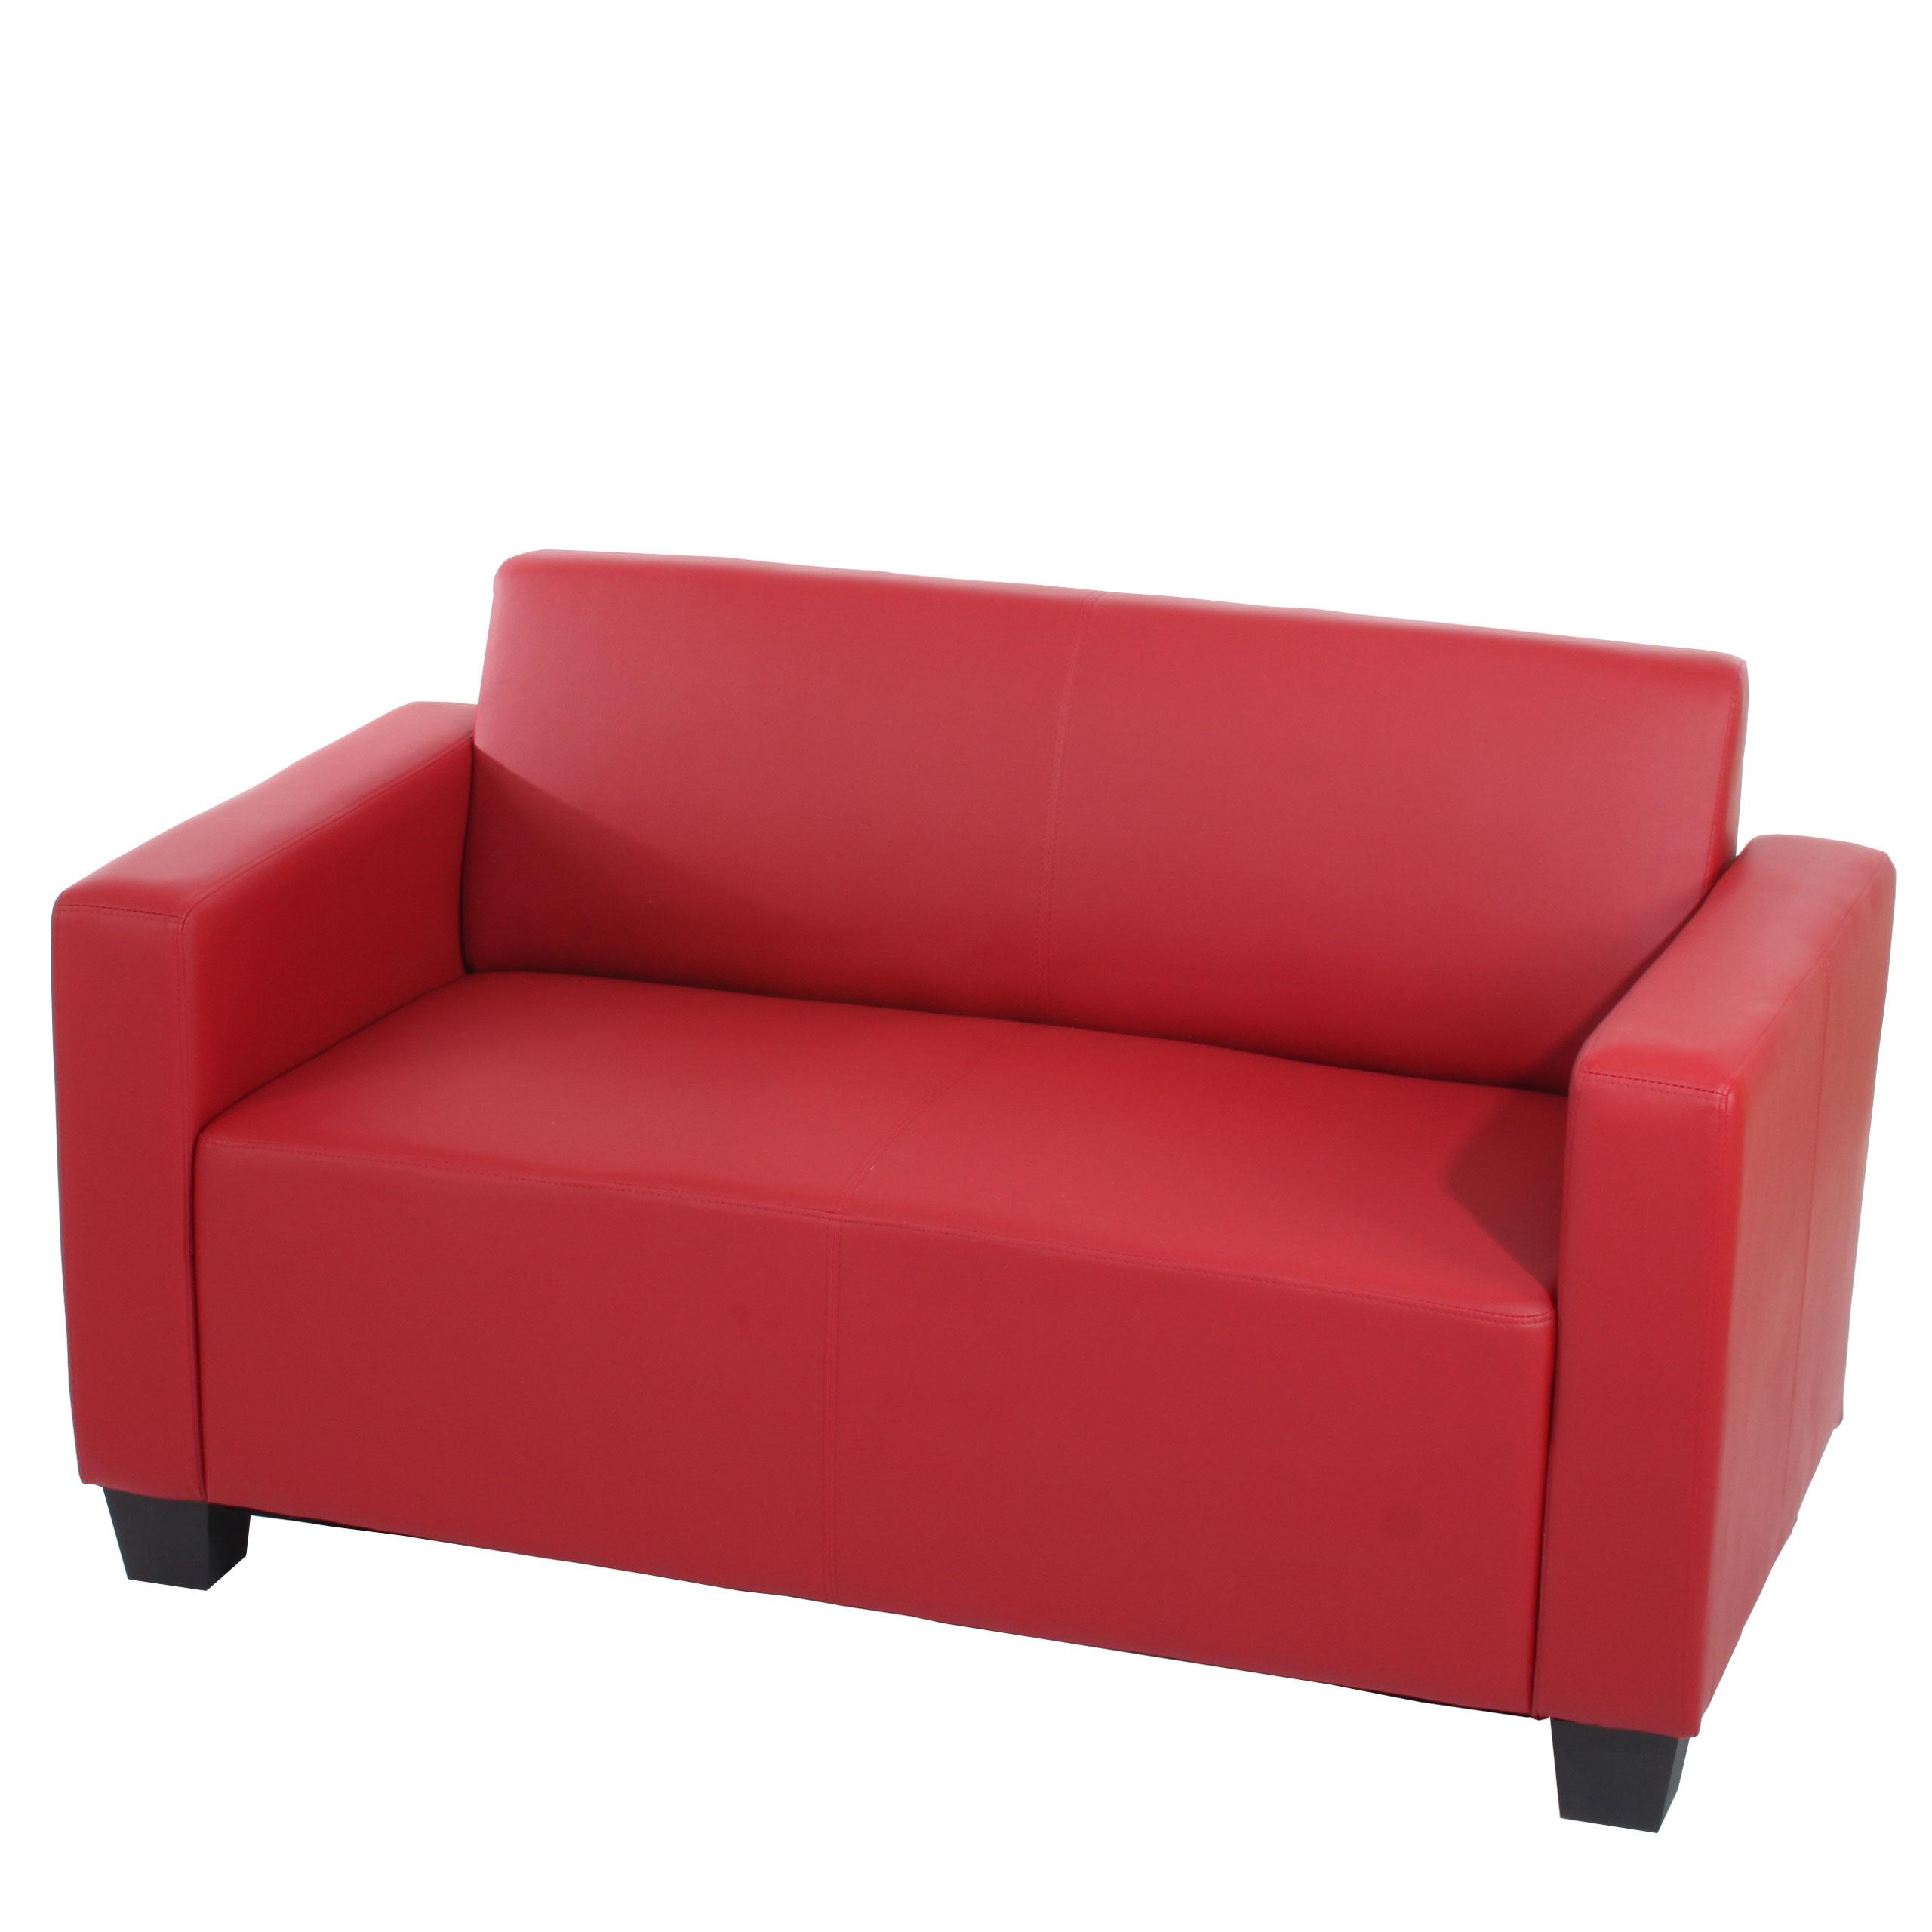 Sessel LYON, 2 Sitzer, elegantes Design, sehr bequem, Leder, Farbe Rot